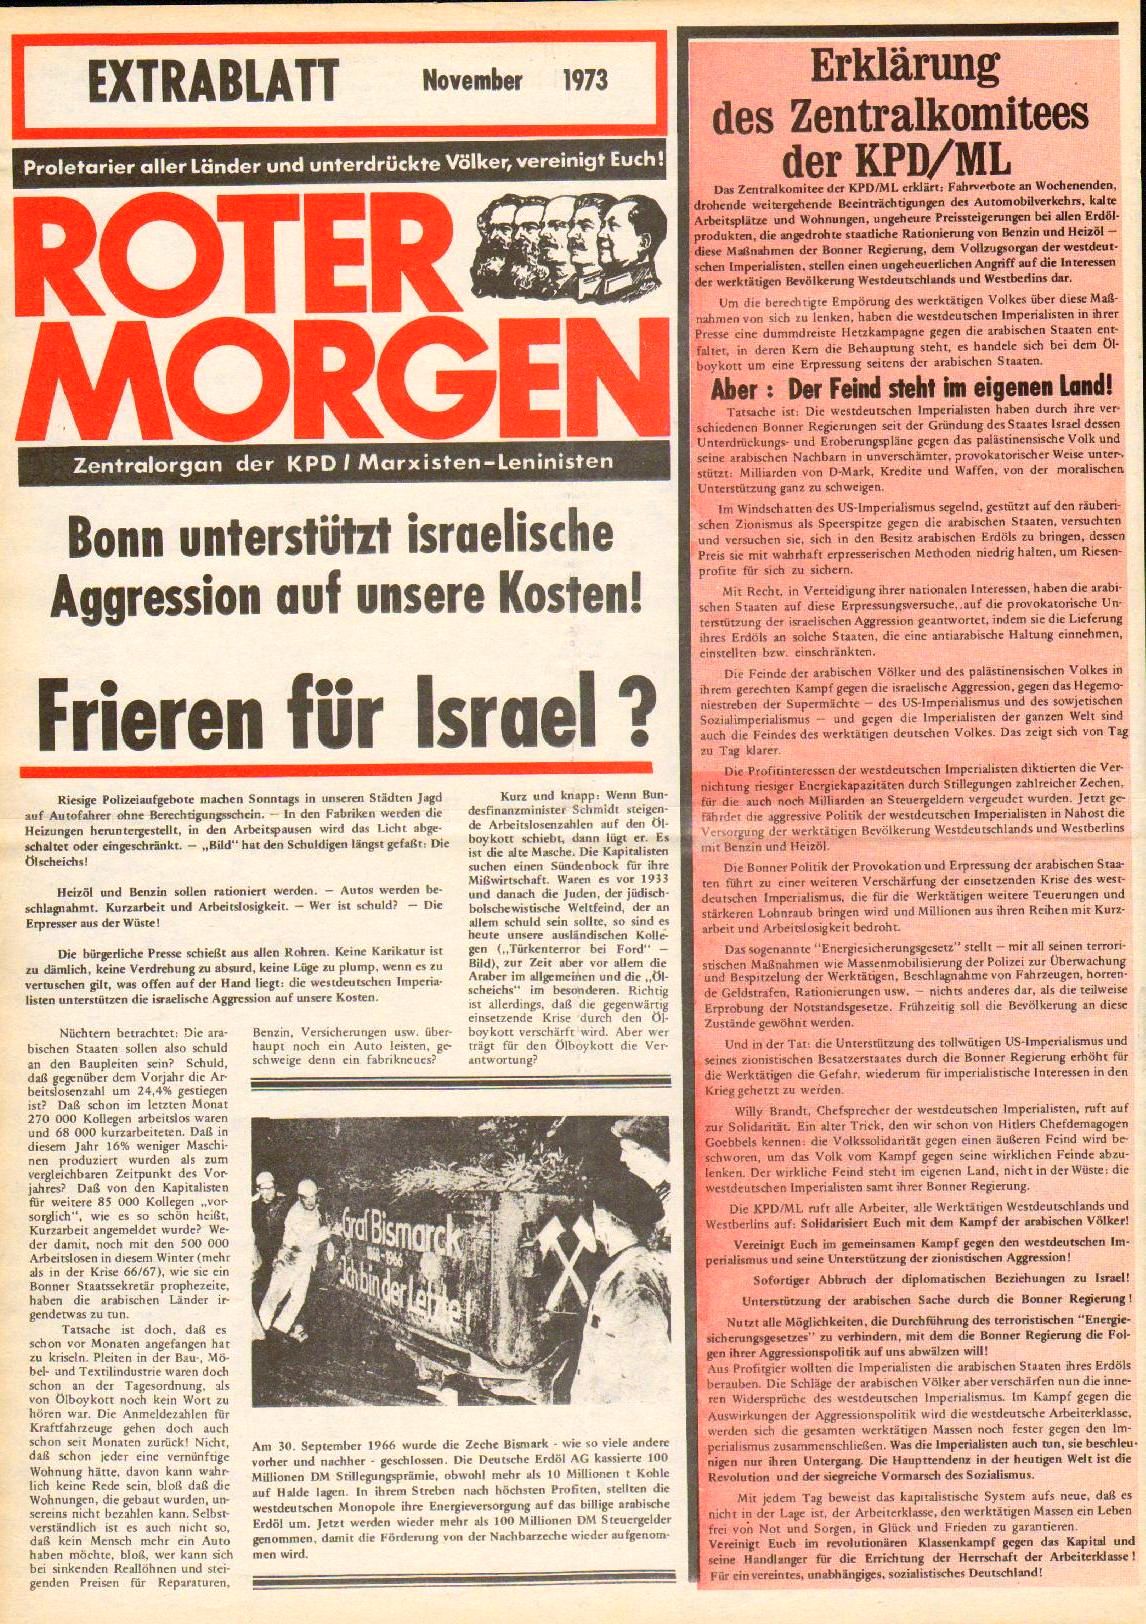 Roter Morgen, 7. Jg., November 1973, Extrablatt, Seite 1